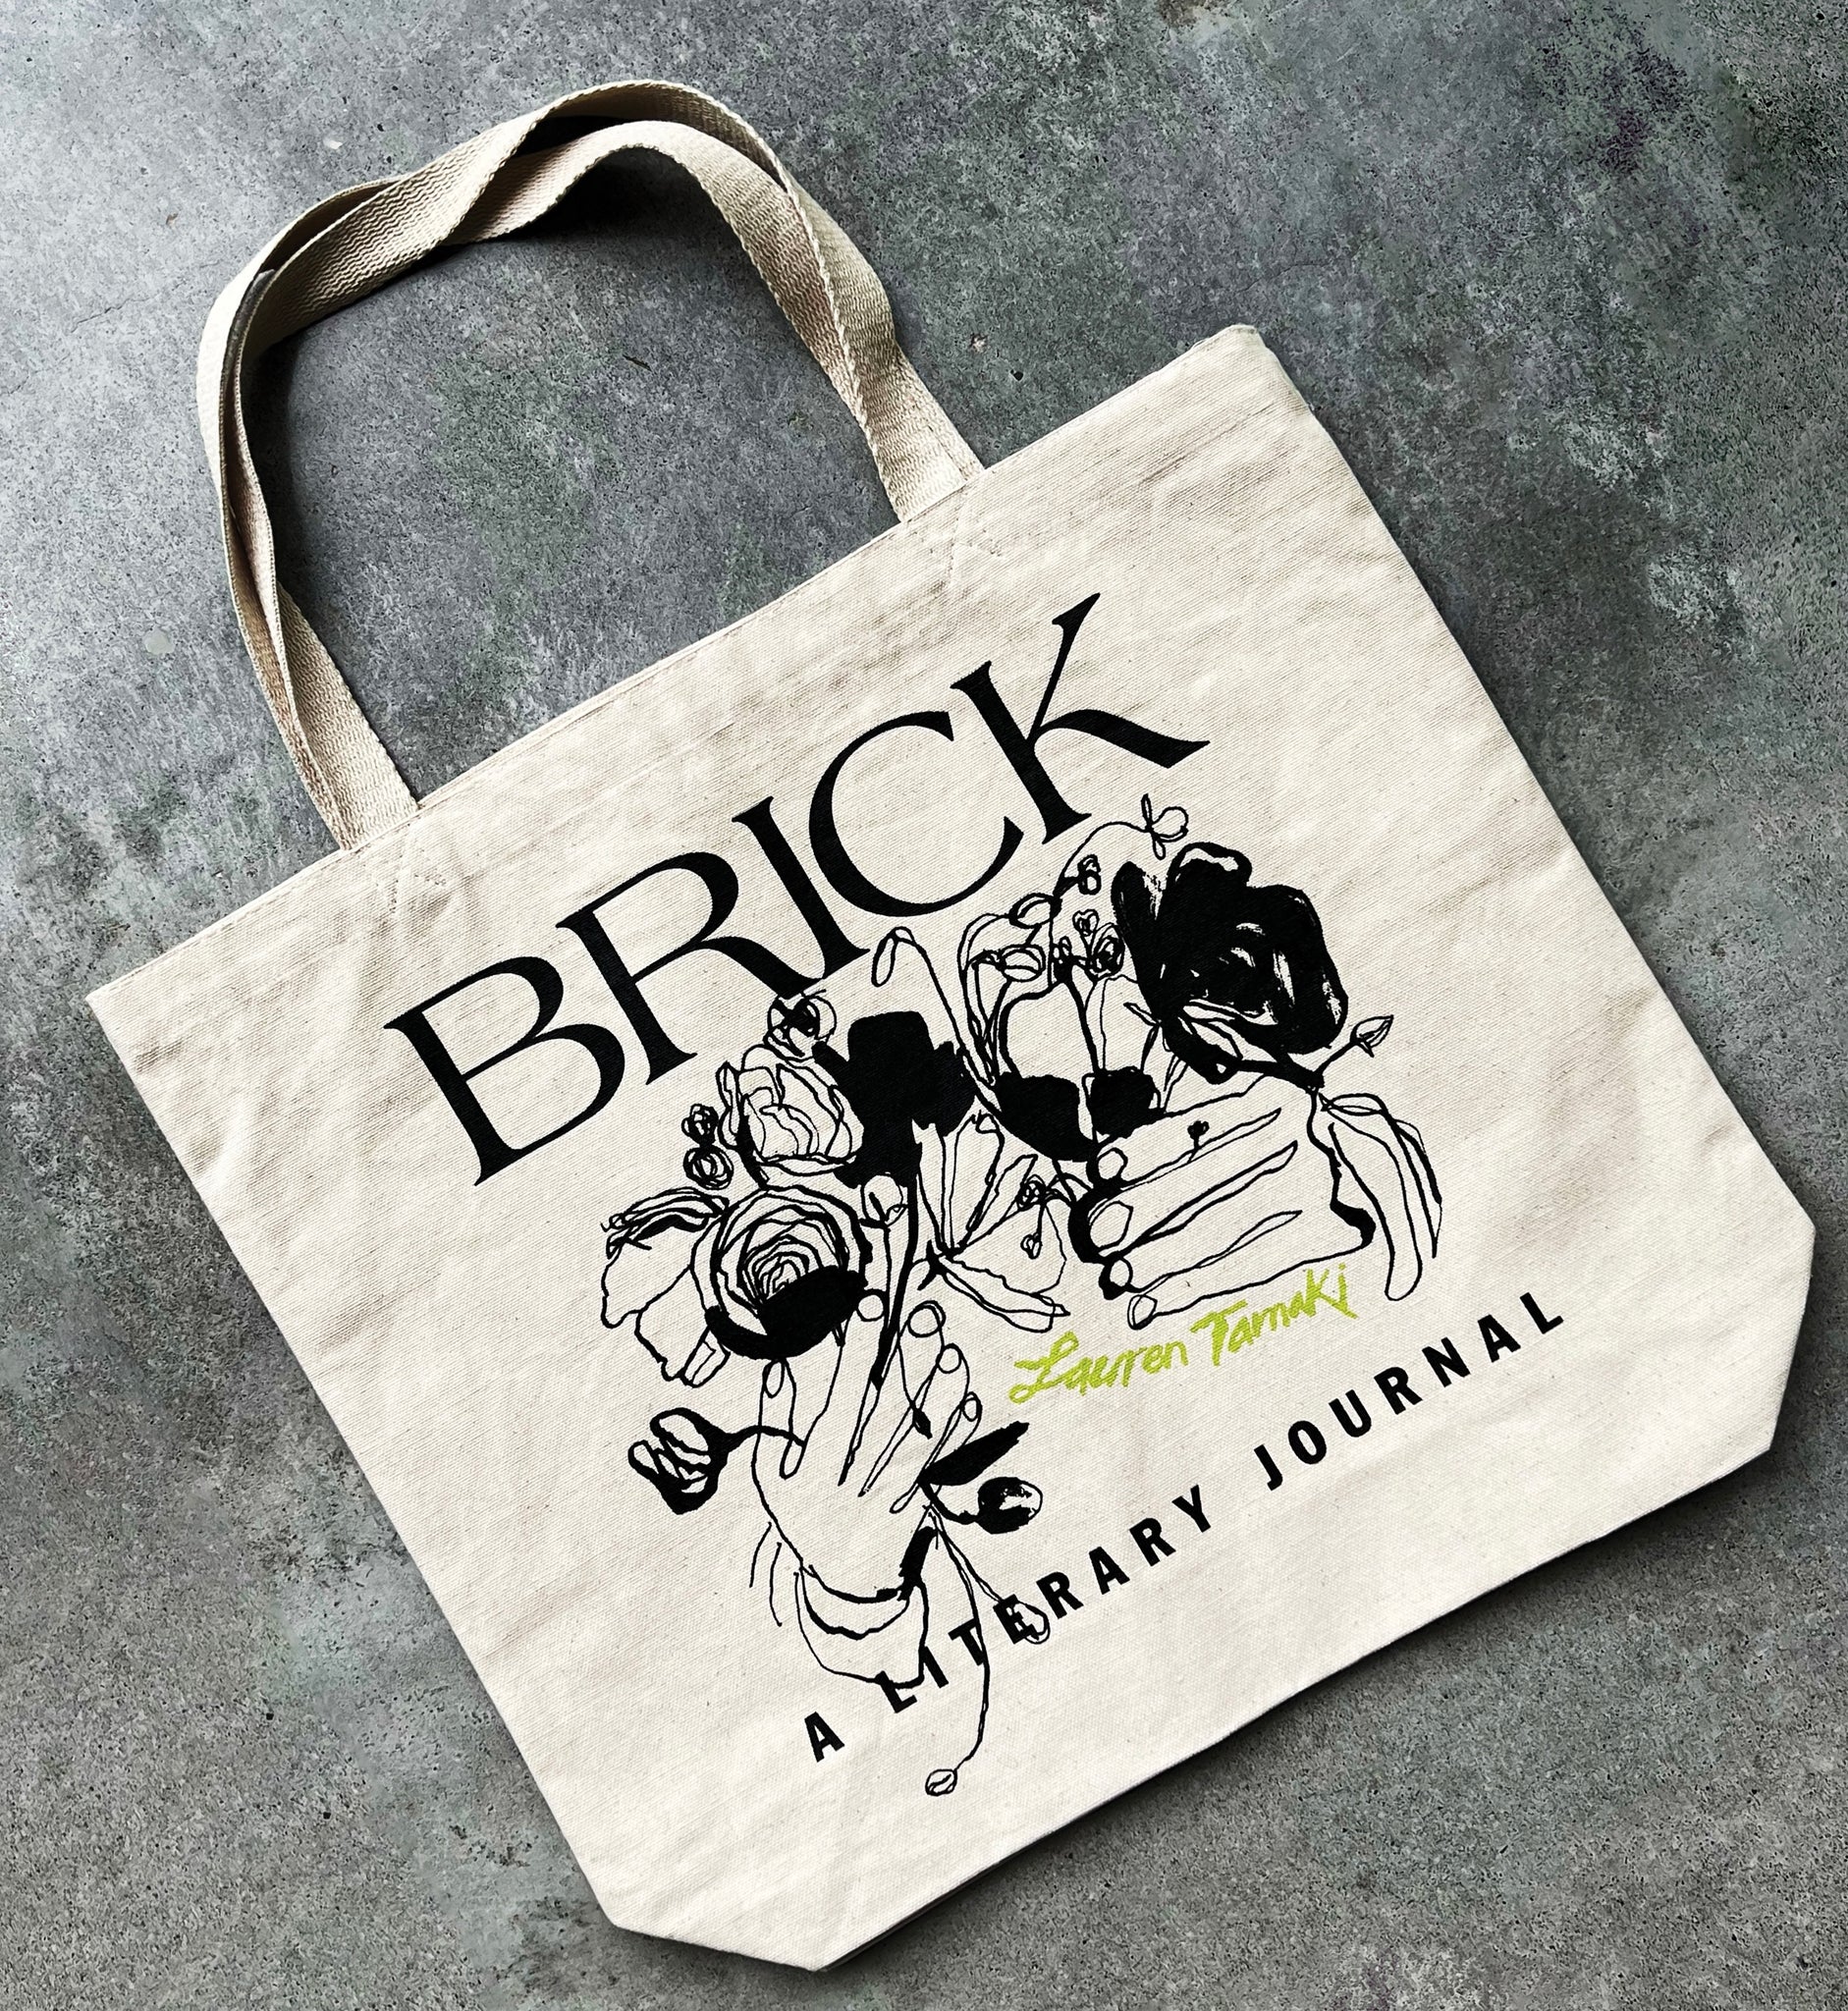 Brick and Lauren Tamaki Tote Bag